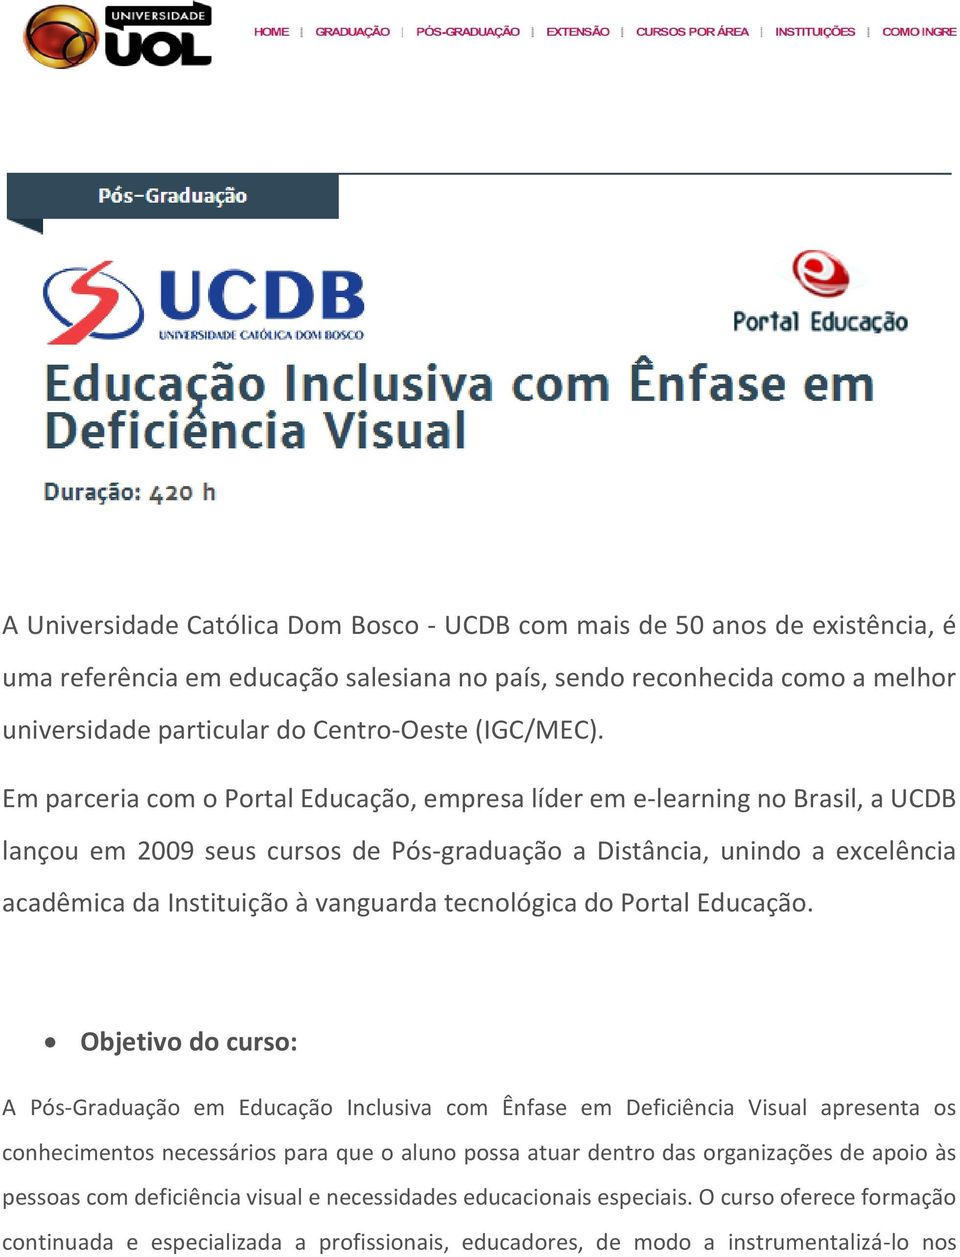 Em parceria com o Portal Educação, empresa líder em e-learning no Brasil, a UCDB lançou em 2009 seus cursos de Pós-graduação a Distância, unindo a excelência acadêmica da Instituição à vanguarda